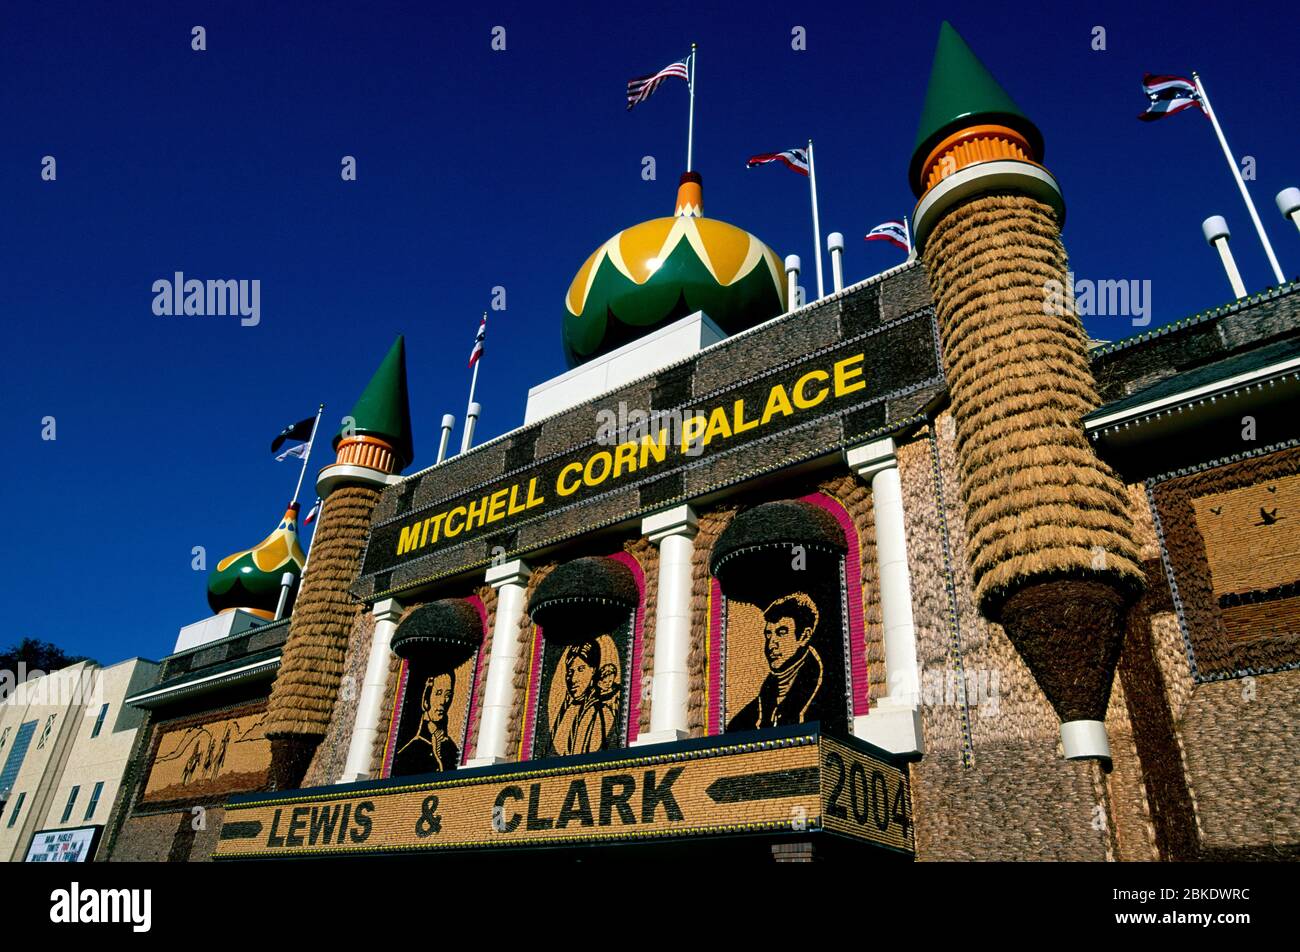 Corn Palace, Mitchell, South Dakota Stock Photo